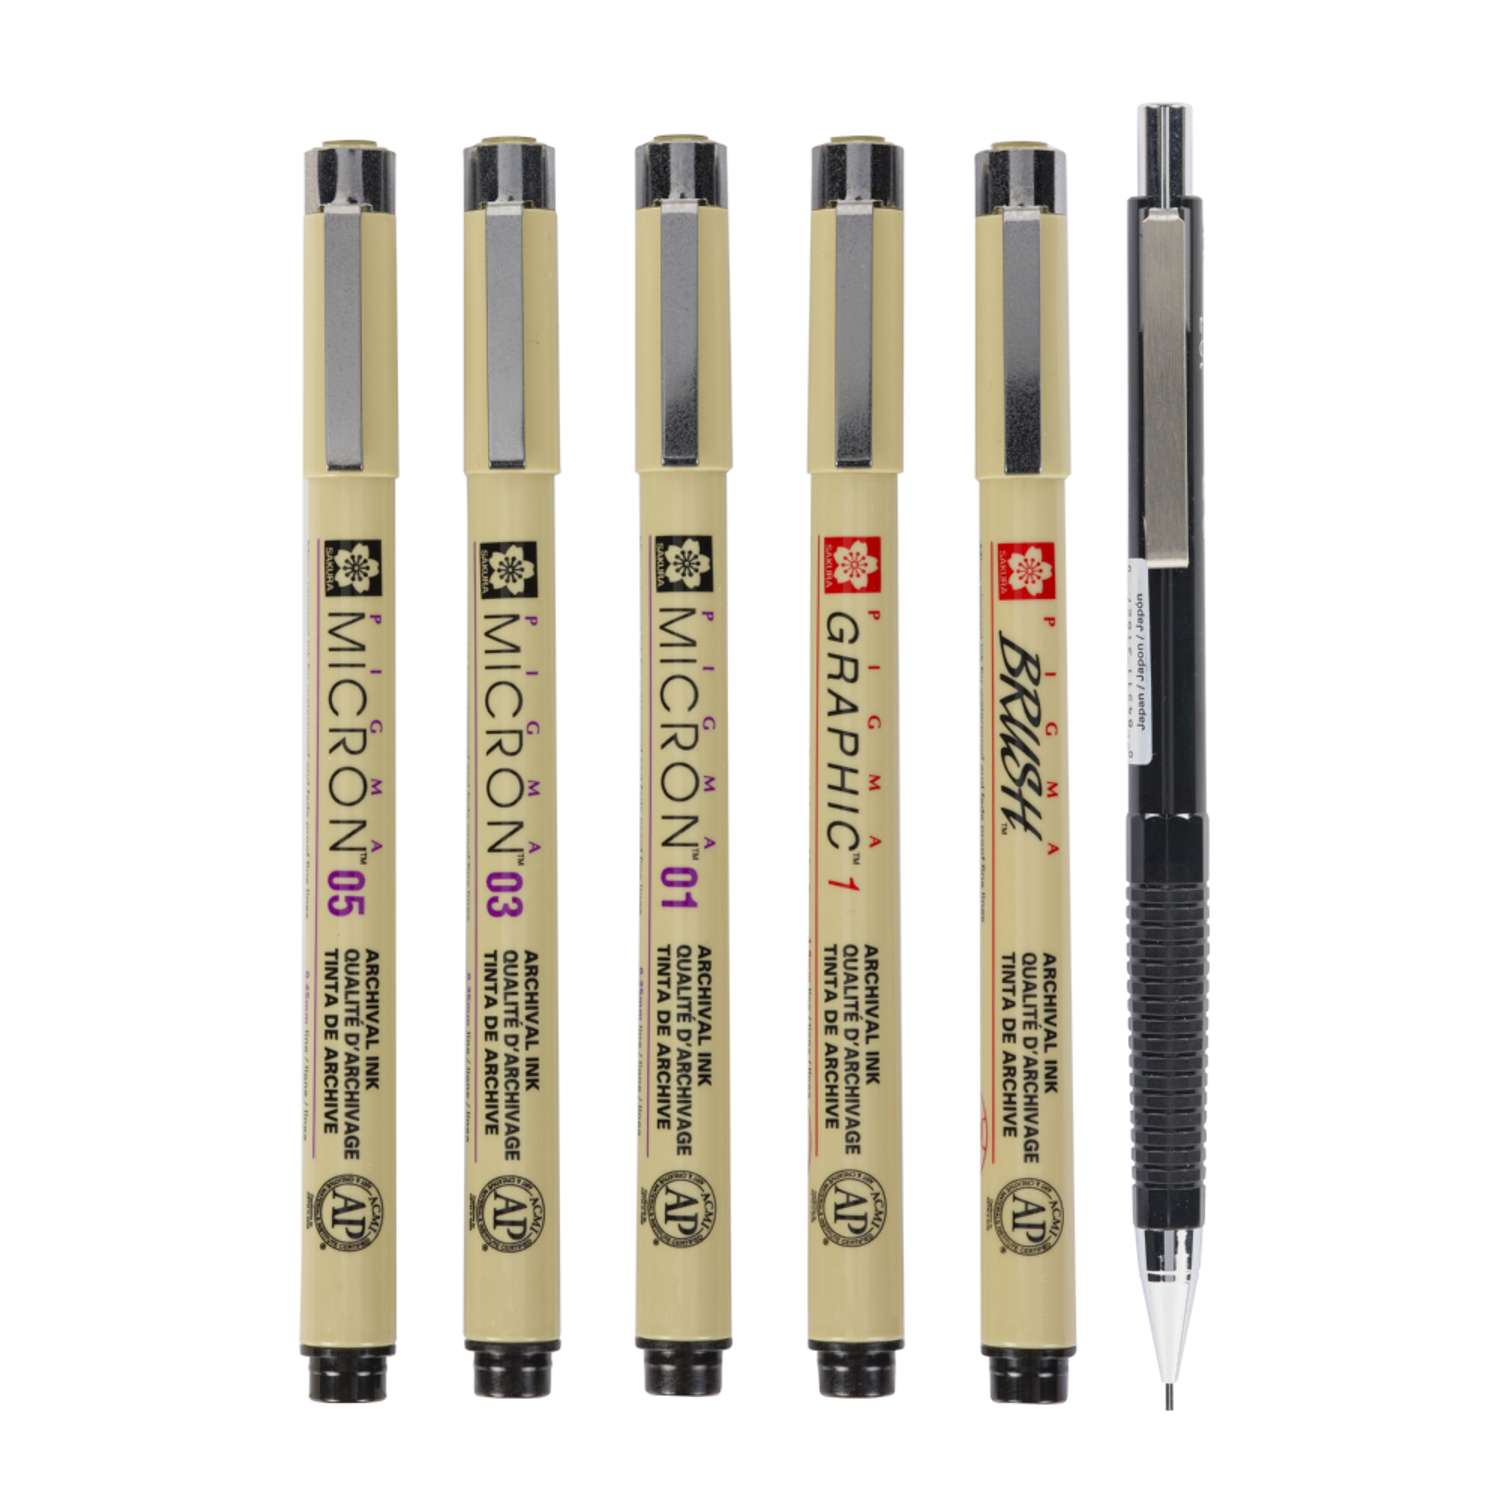 Набор черных капиллярных ручек Sakura Pigma Micron Manga 6 штук brush механический карандаш 0.7мм. - фото 3